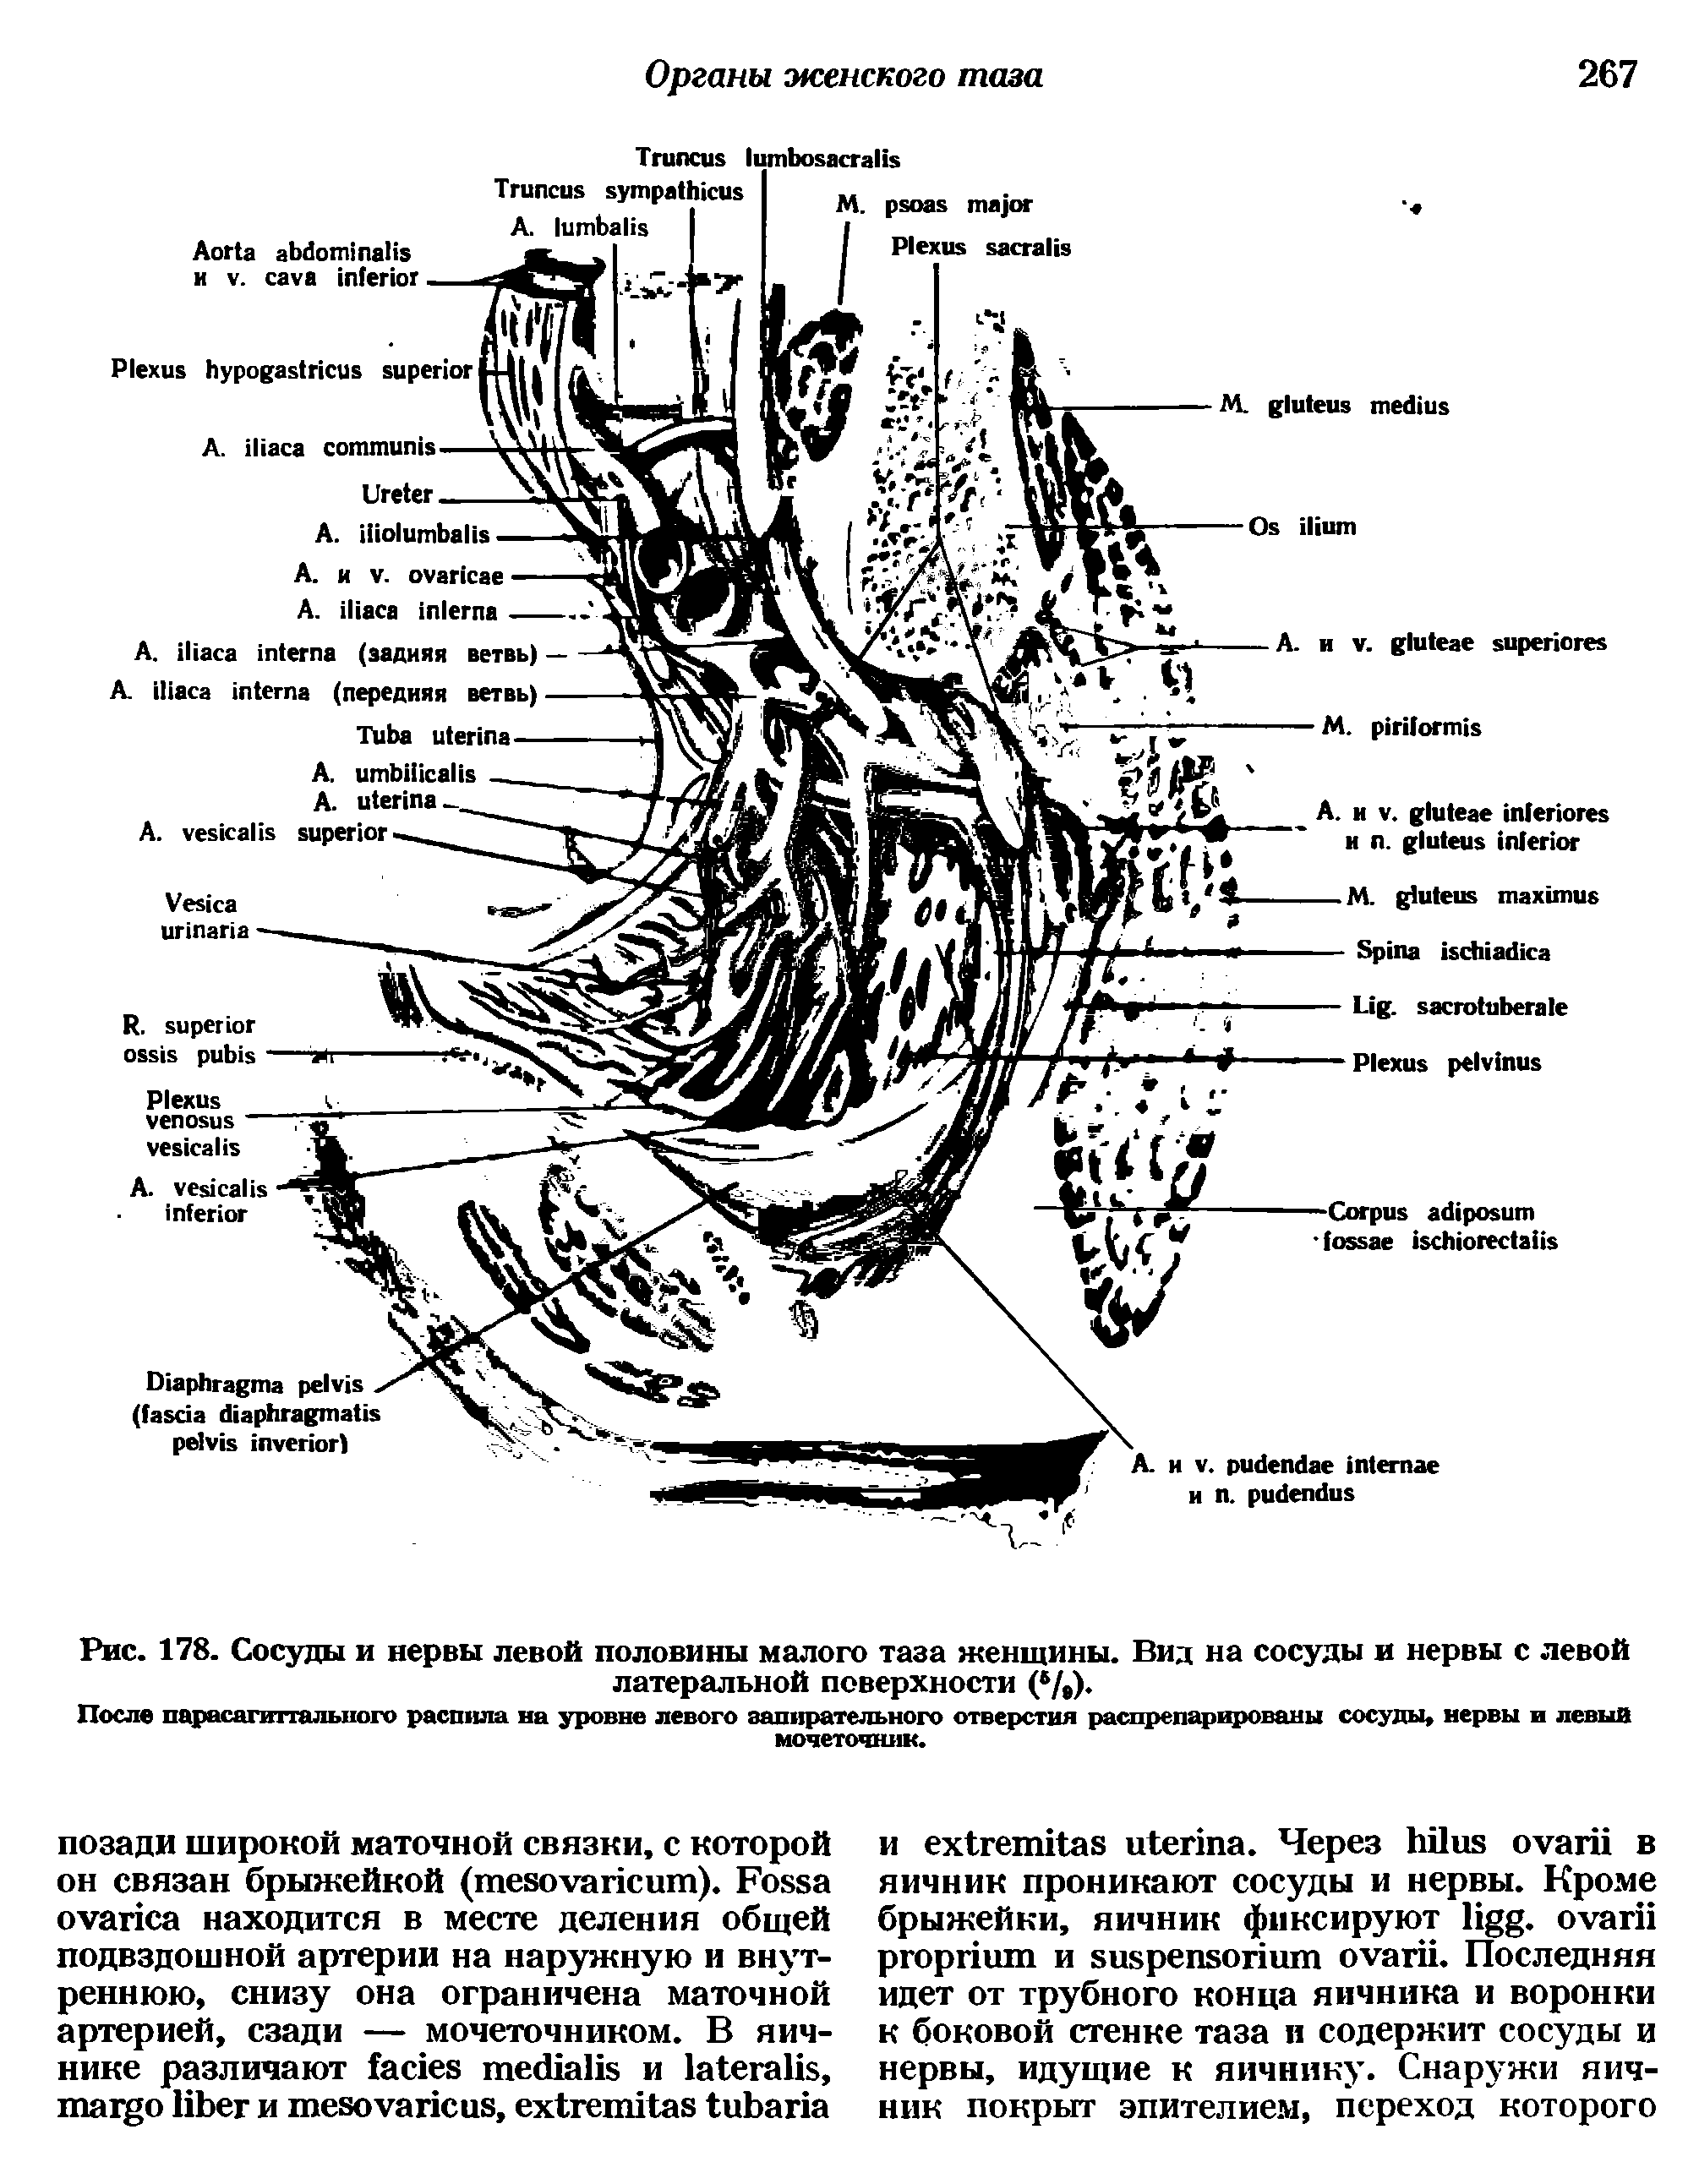 Рис. 178. Сосуды и нервы левой половины малого таза женщины. Вид на сосуды и нервы с левой латеральной поверхности ( /,).